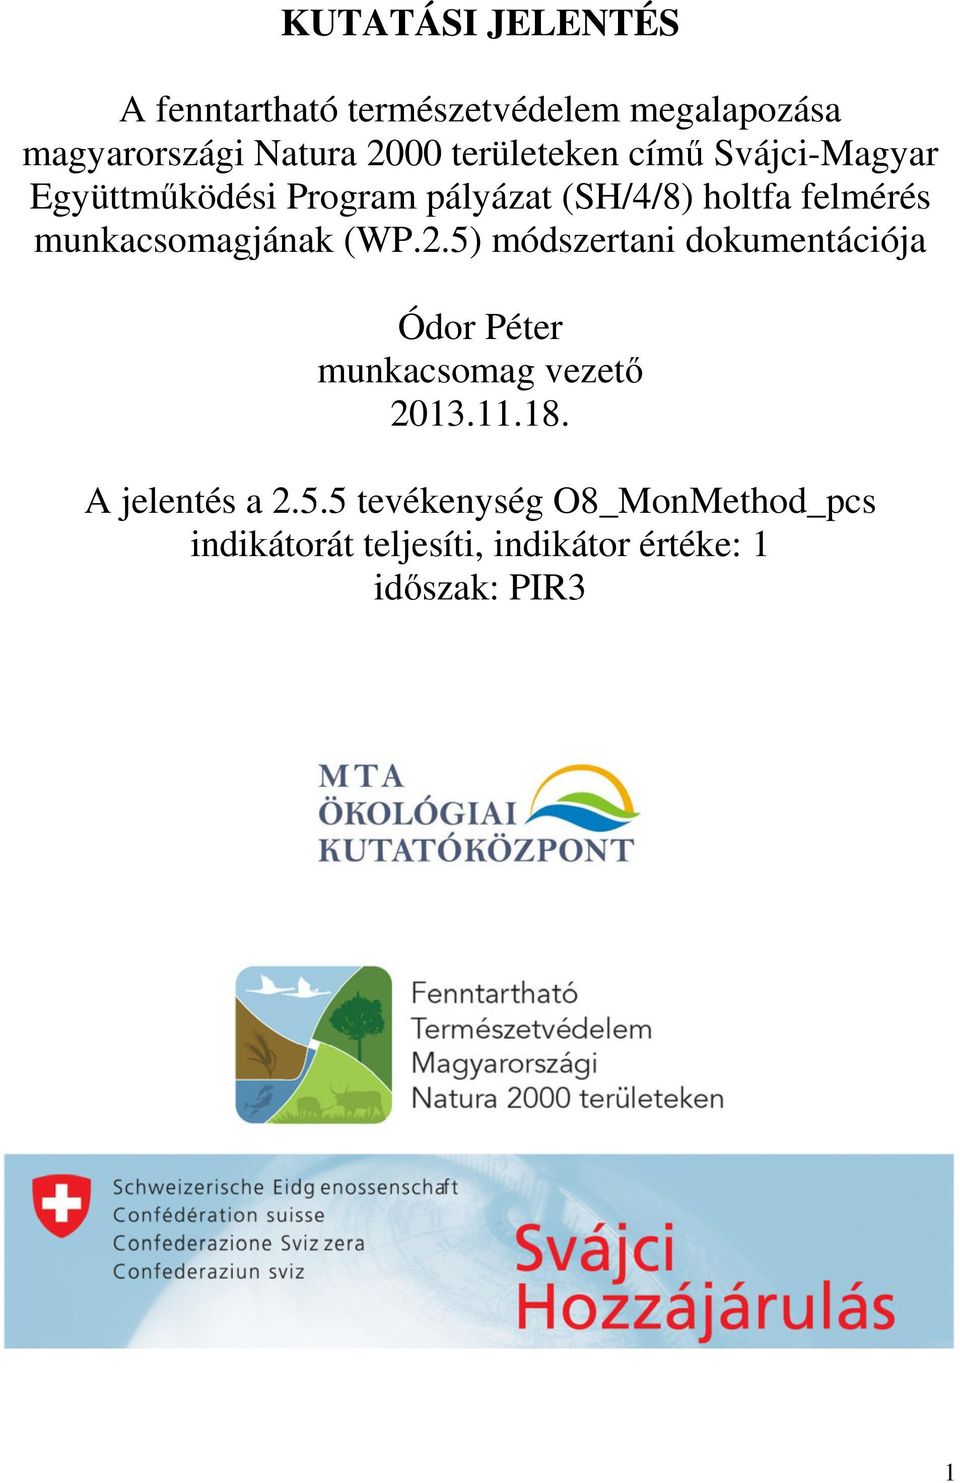 munkacsomagjának (WP.2.5) módszertani dokumentációja Ódor Péter munkacsomag vezető 2013.11.18.